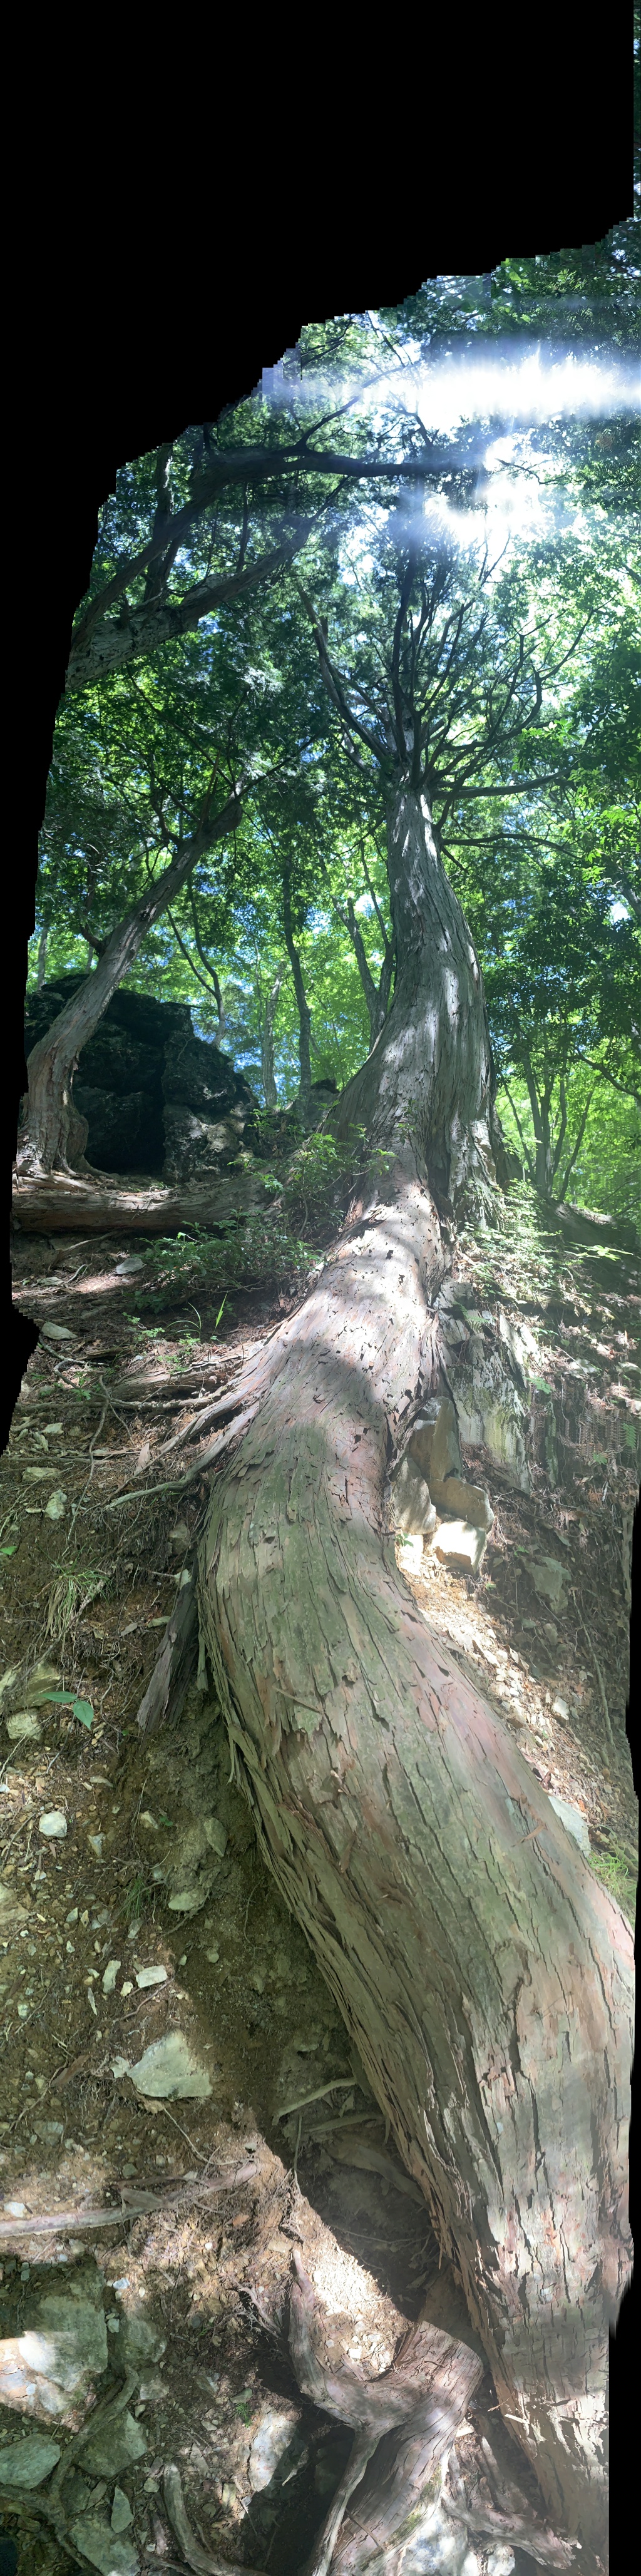 三峯神社 三峰神社  秩父　大木の根を縦パノラマ